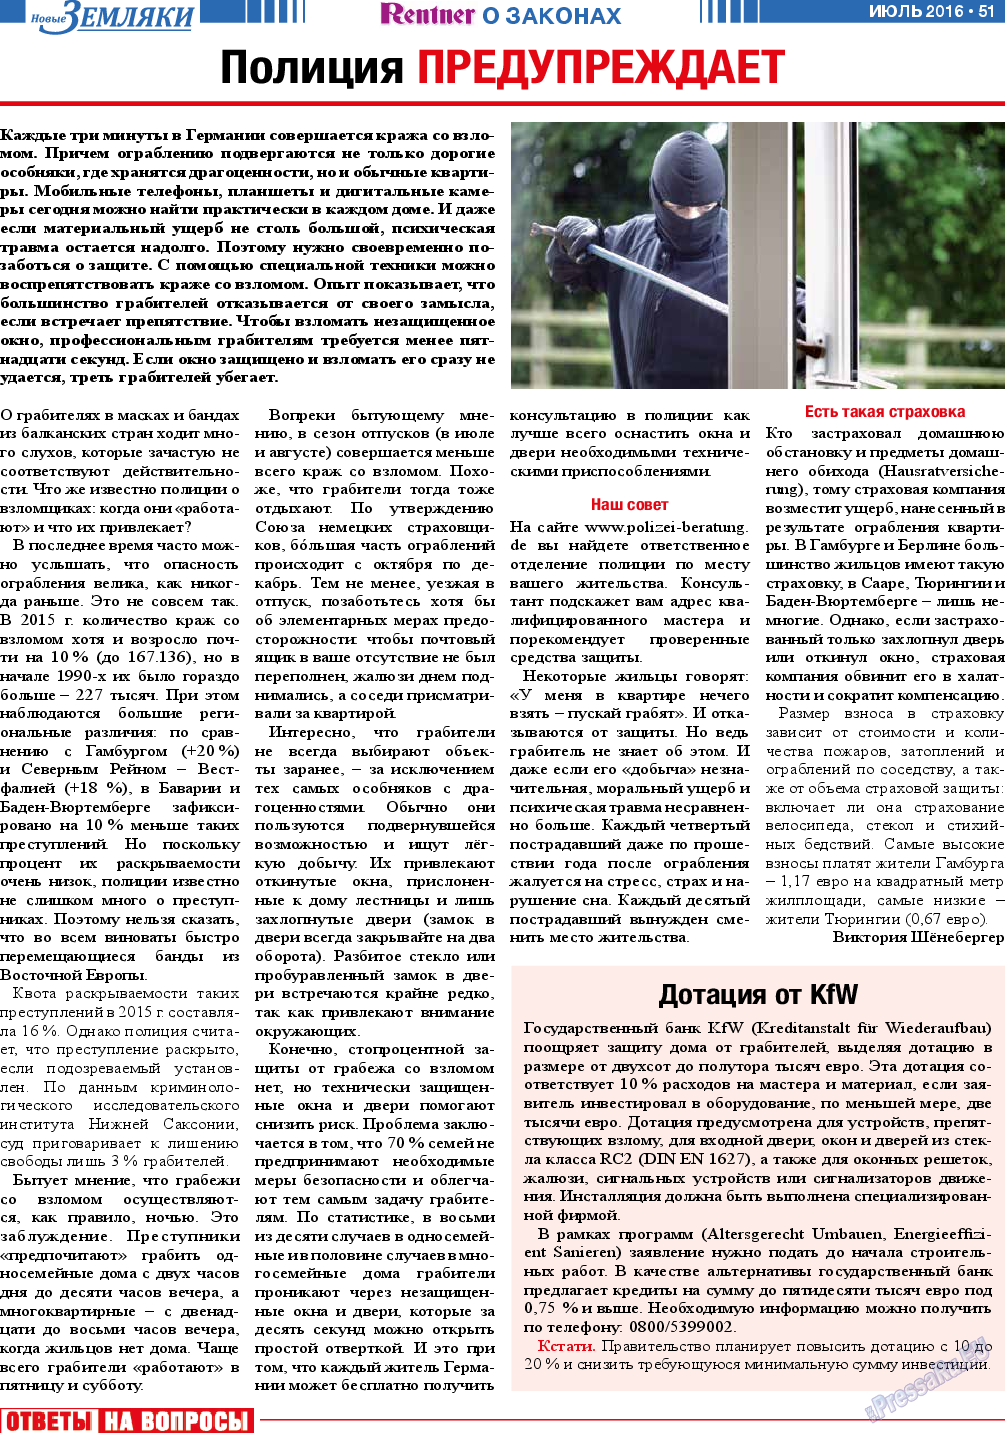 Новые Земляки (газета). 2016 год, номер 7, стр. 51